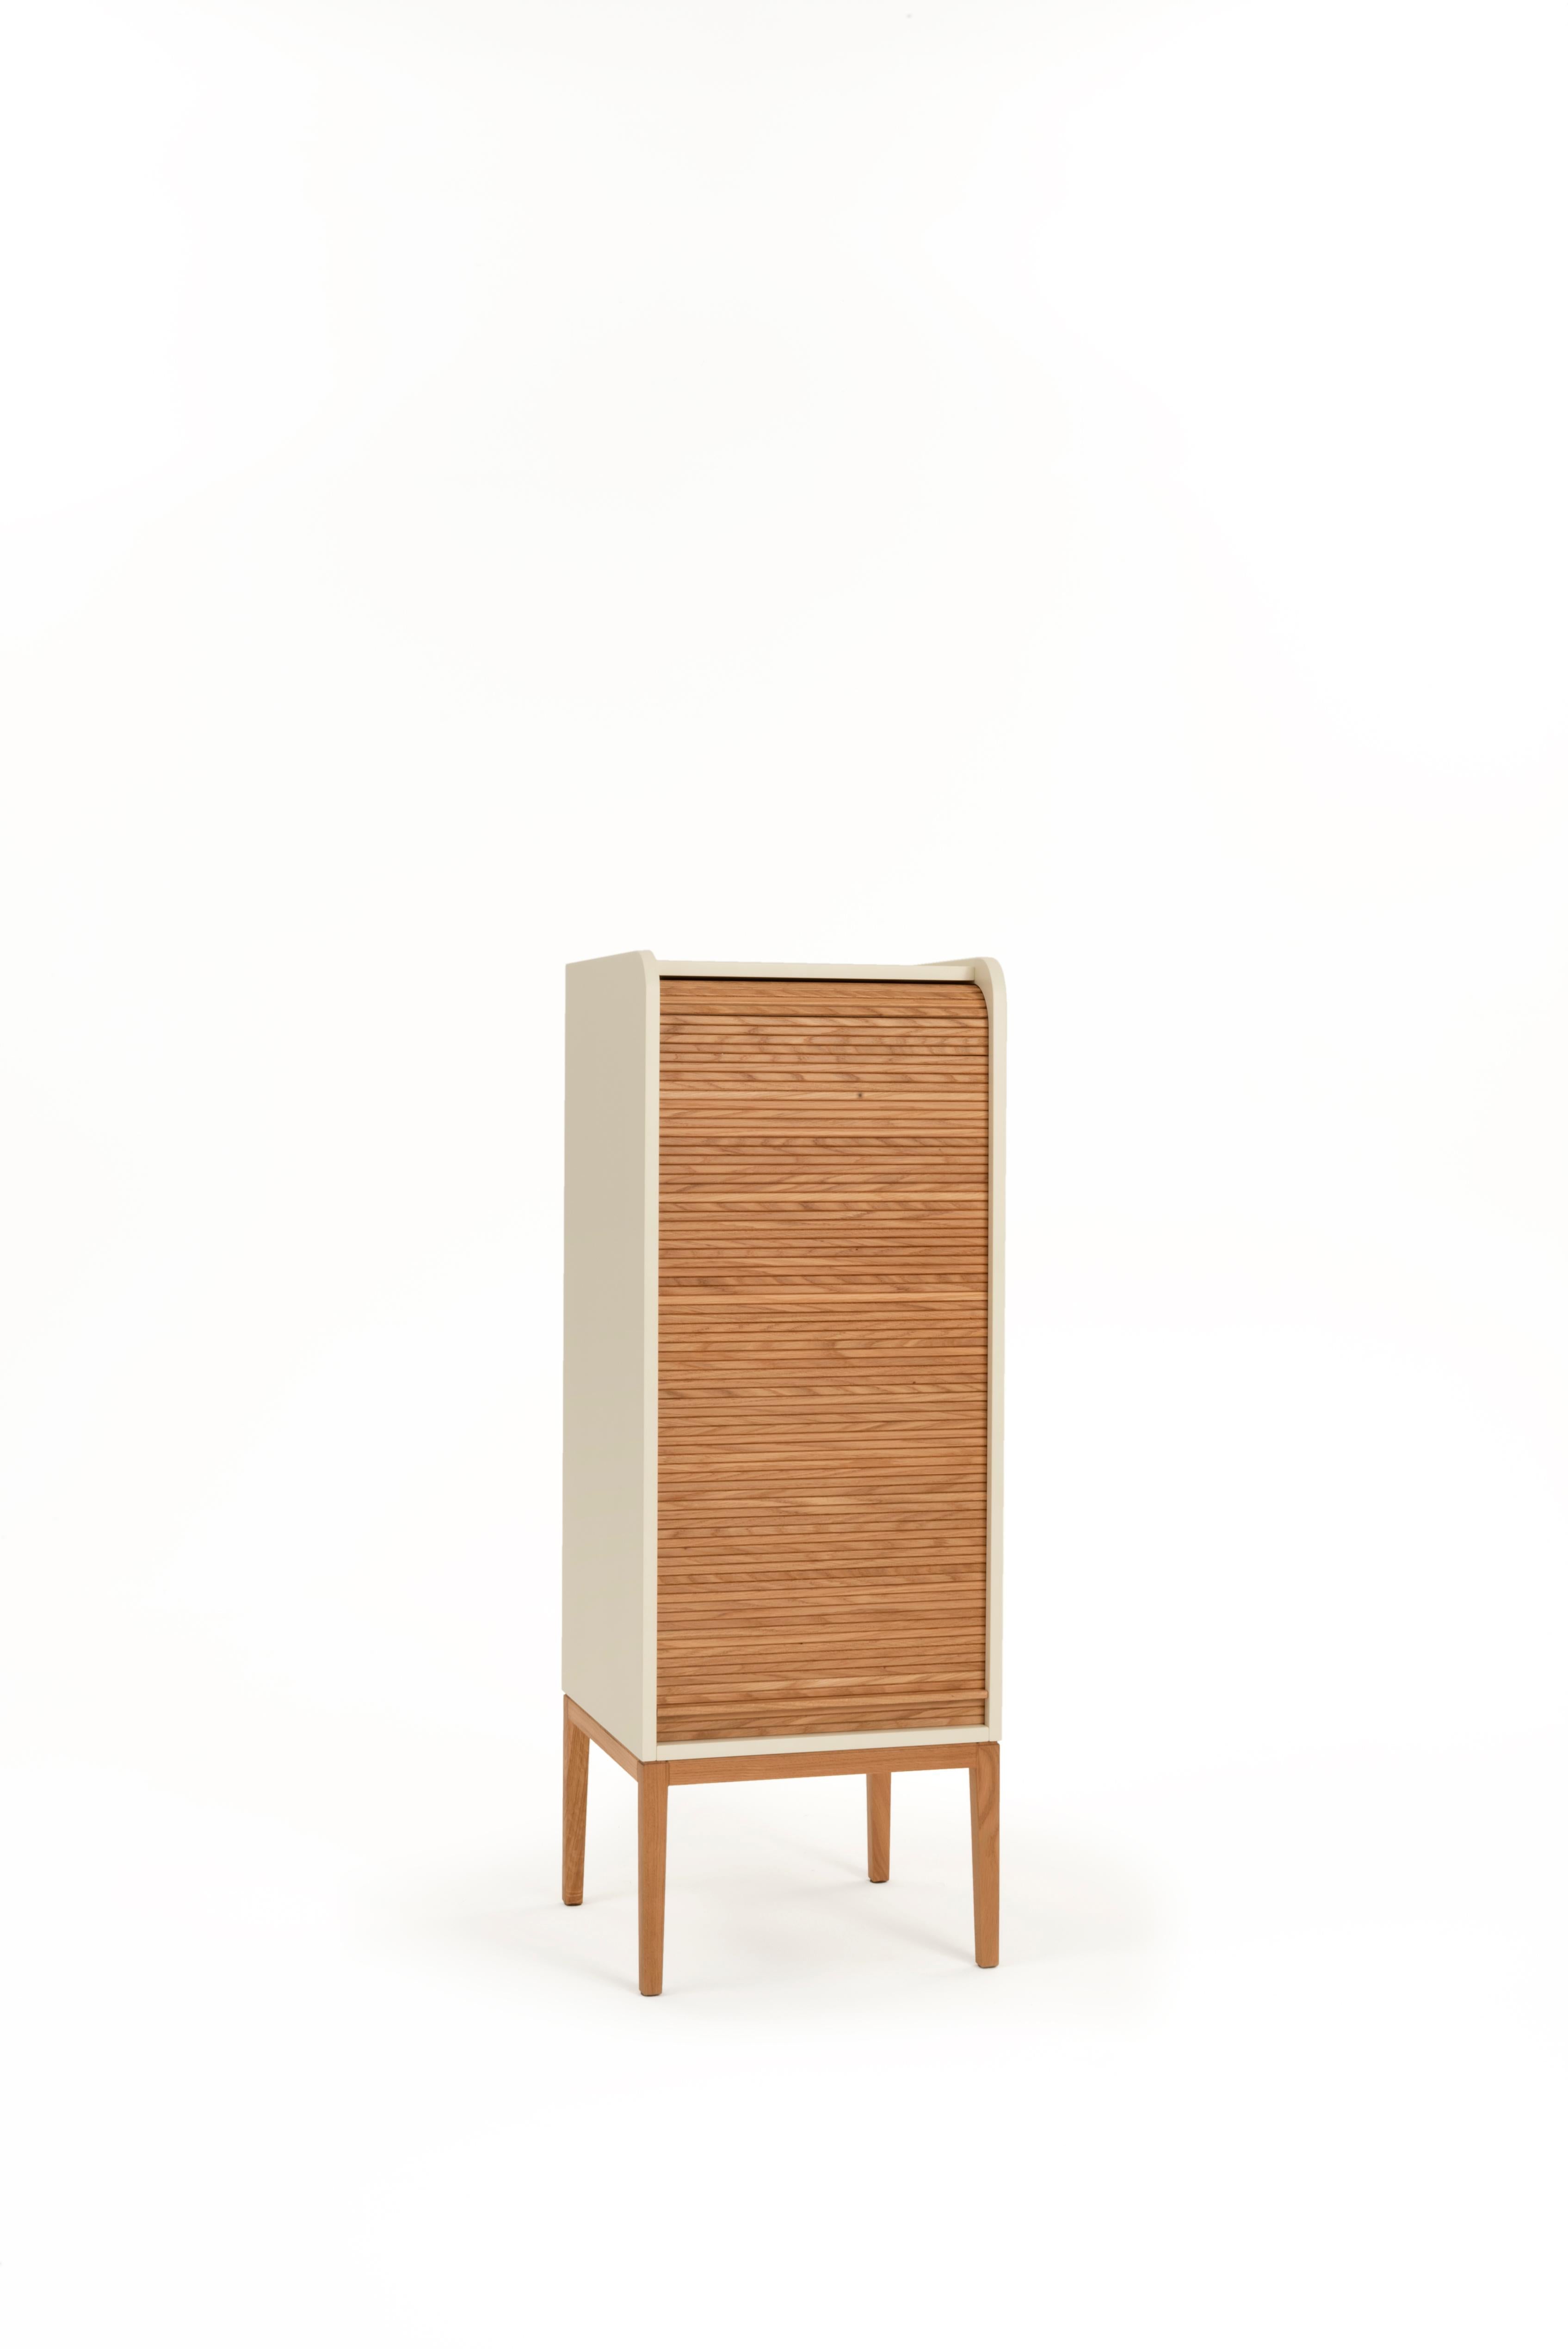 Tapparelle Medium Cabinet, Sandweiß von Colé Italia mit Emmanuel Gallina
Abmessungen: H.115 D.42 B.42 cm
MATERIALIEN: Container mit Beinen und 